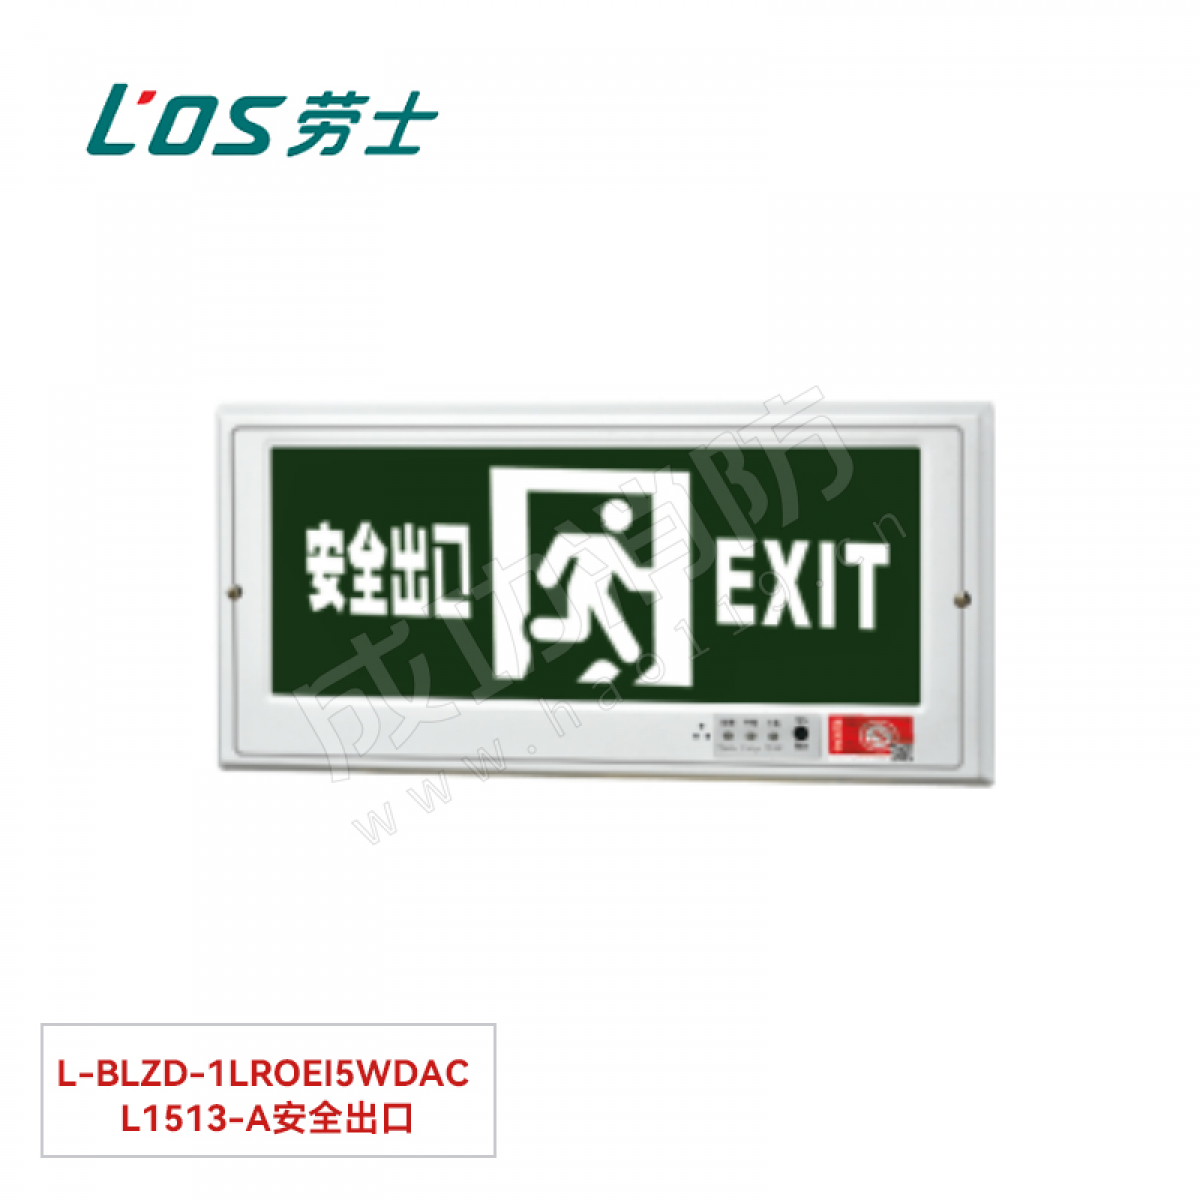 劳士 消防应急标志灯(嵌墙安装) L-BLZD-1LROEⅠ5WDBA L4503安全出口